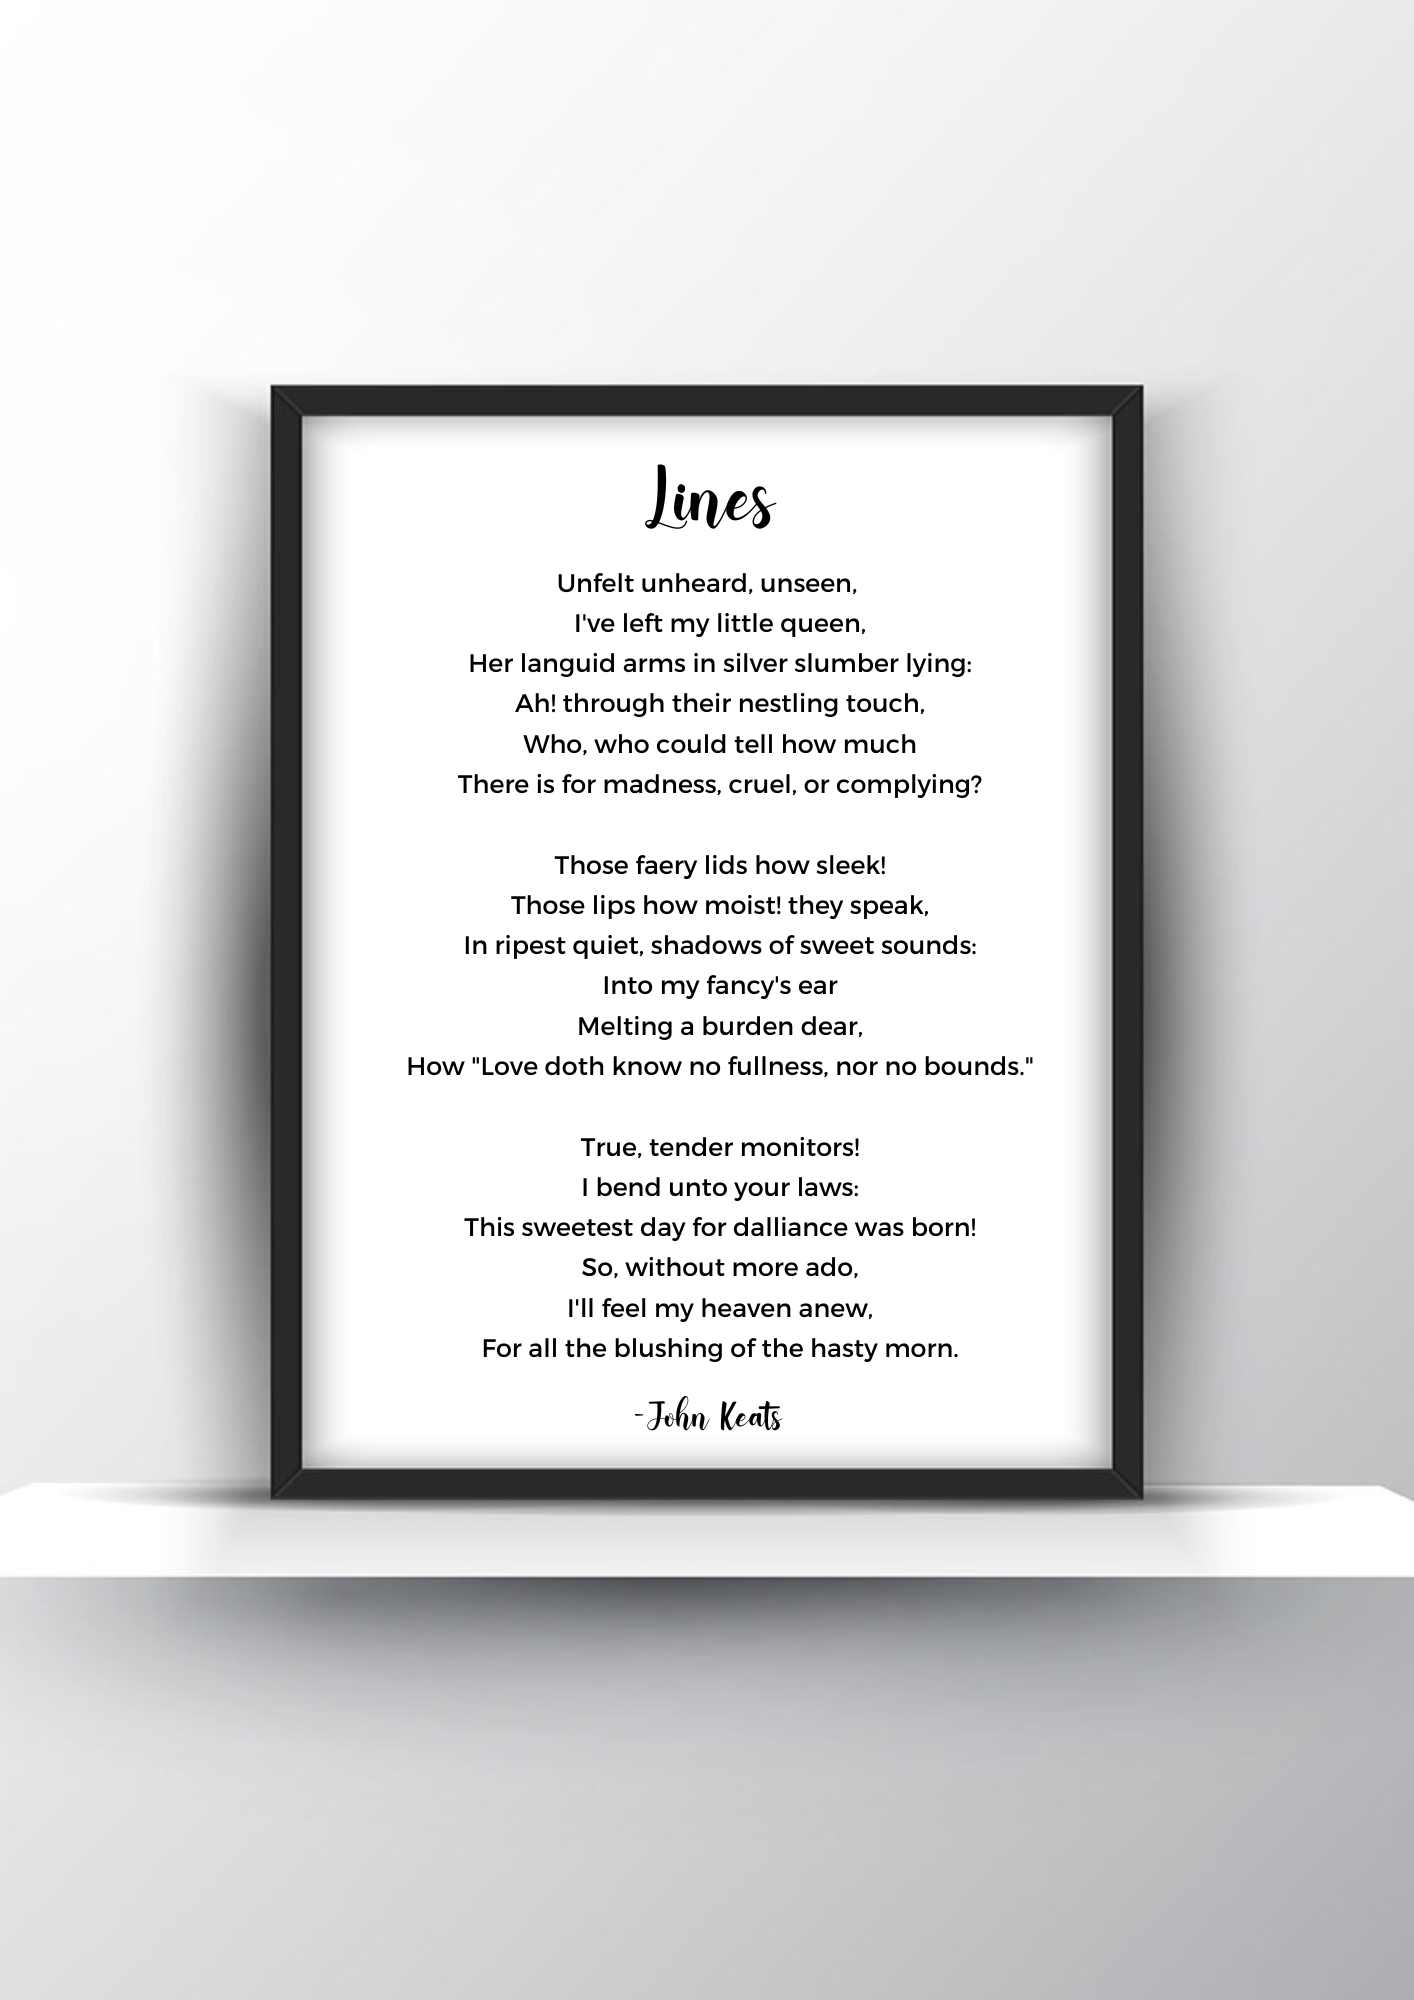 Lines Poem by John Keats